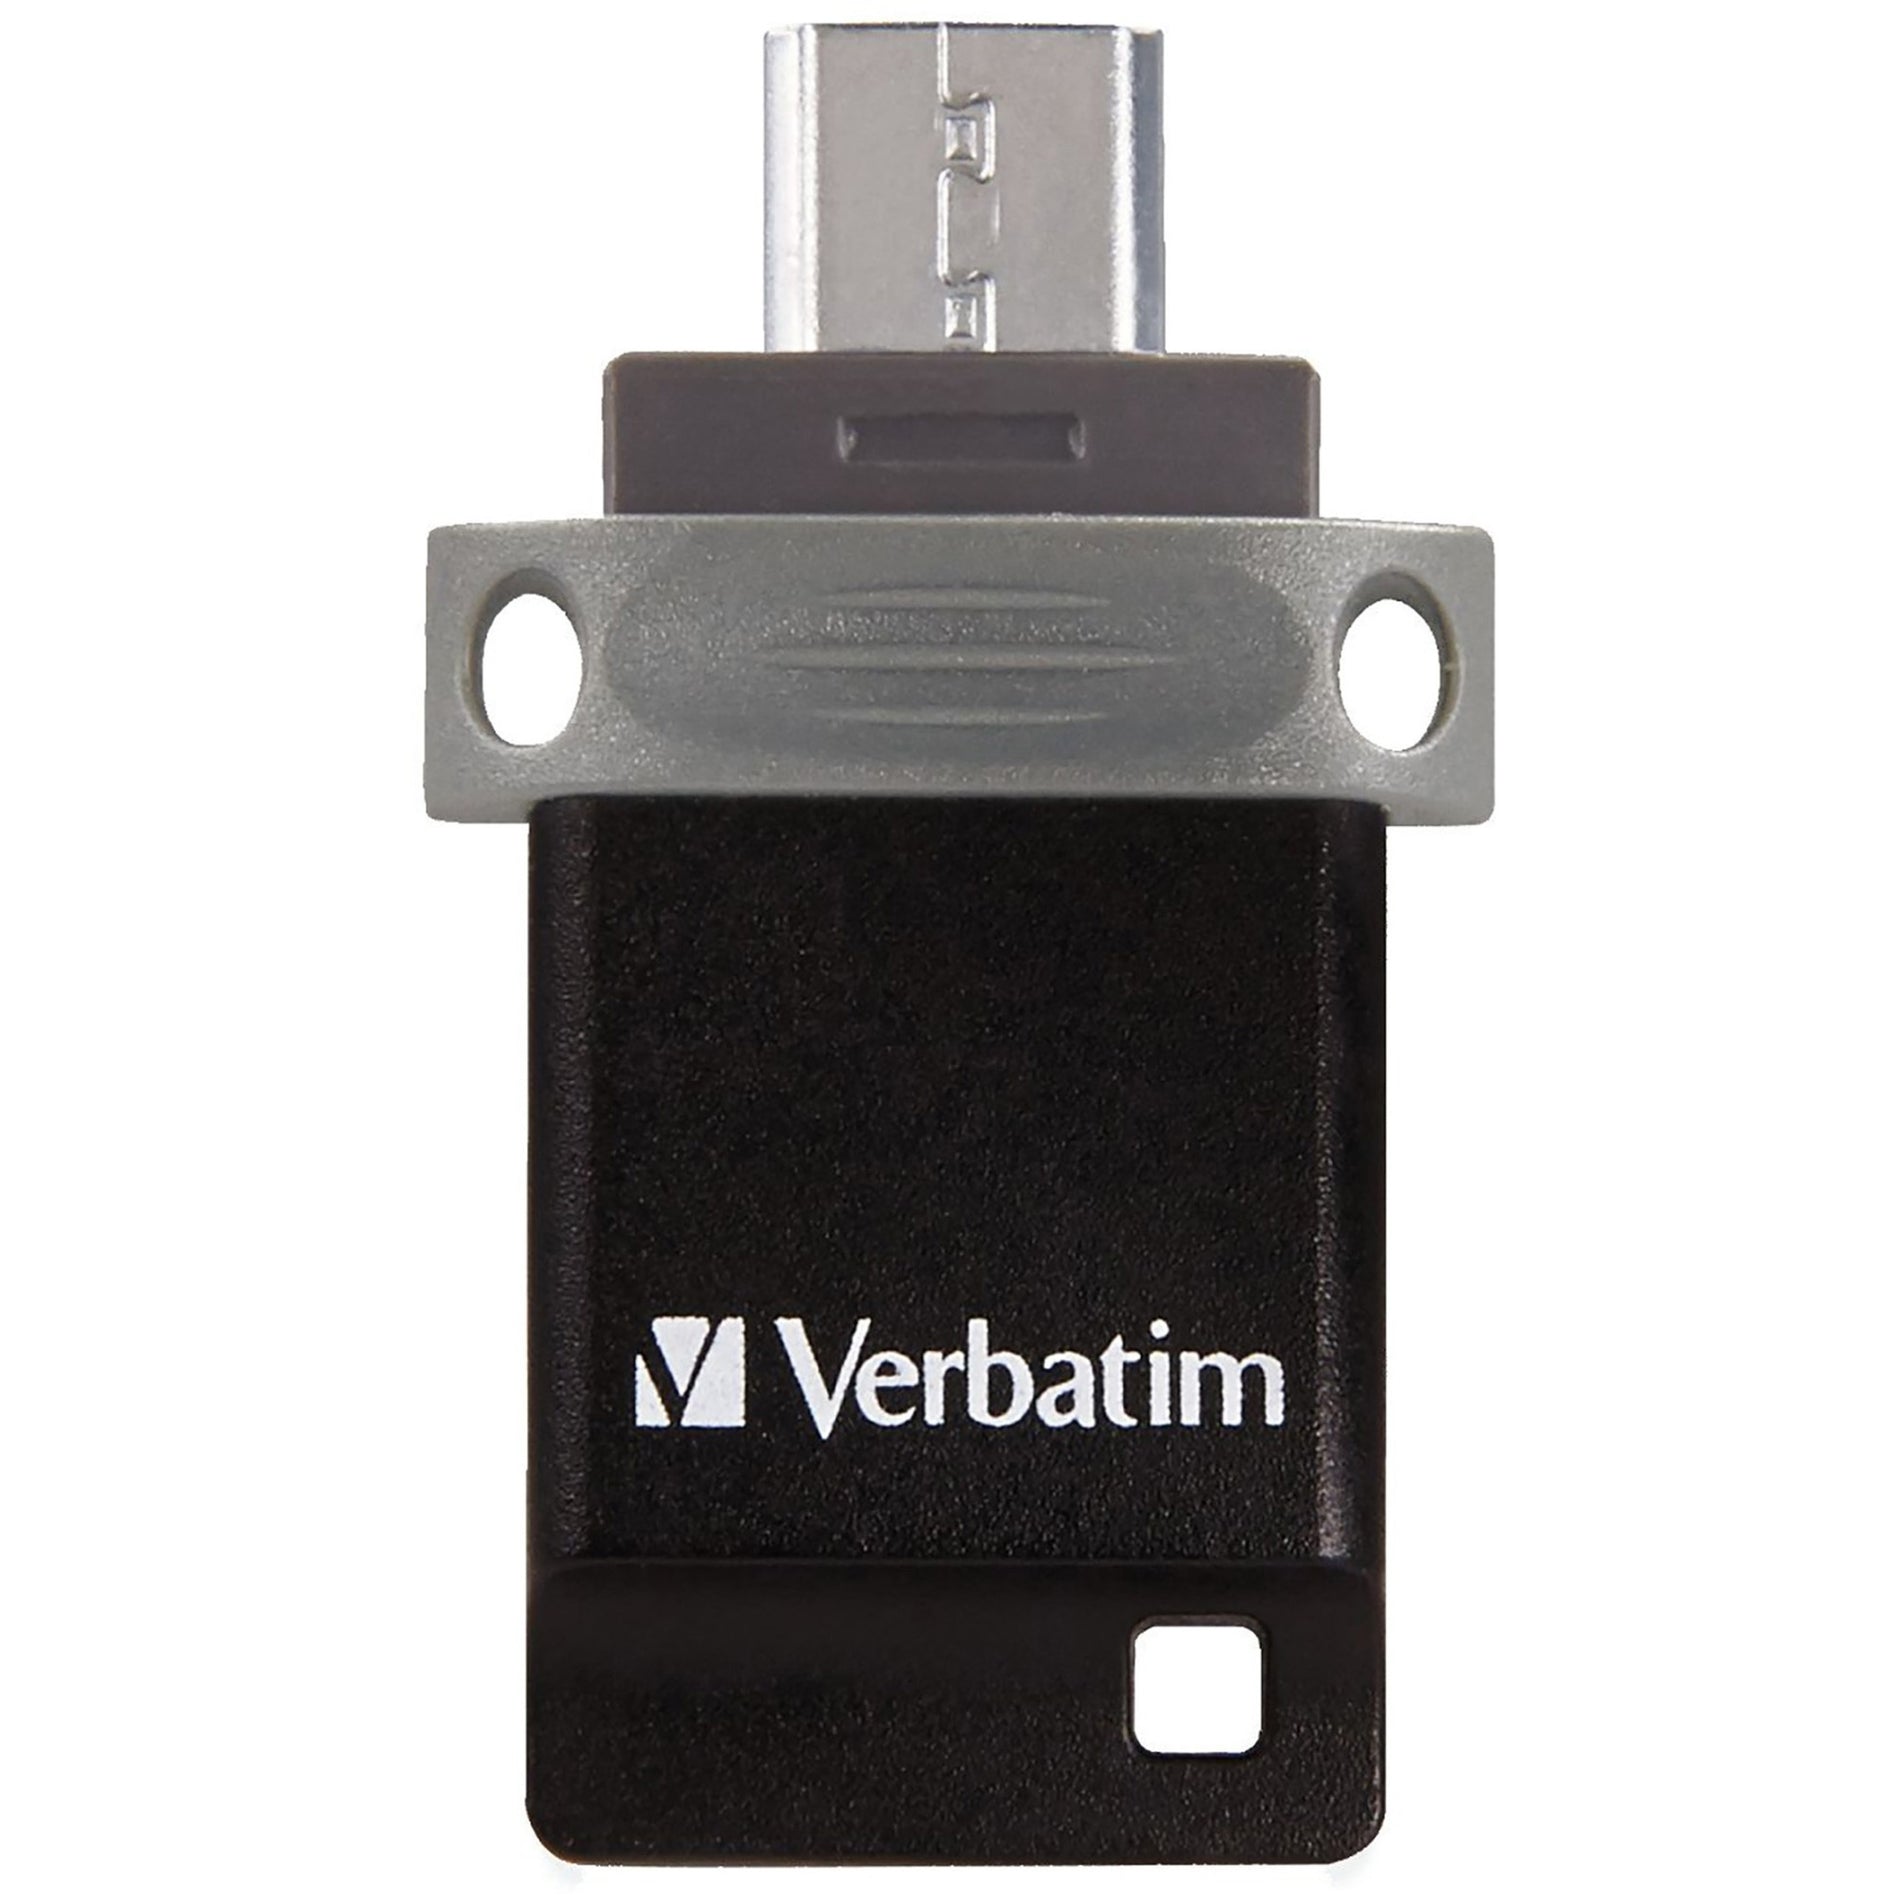 فيرباتيم ٩٩١٤٠ تخزين 'n' انتقل محرك فلاش USB مزدوج، ٦٤ جيجابايت، أسود/رمادي اسم العلامة التجارية: فيرباتيم